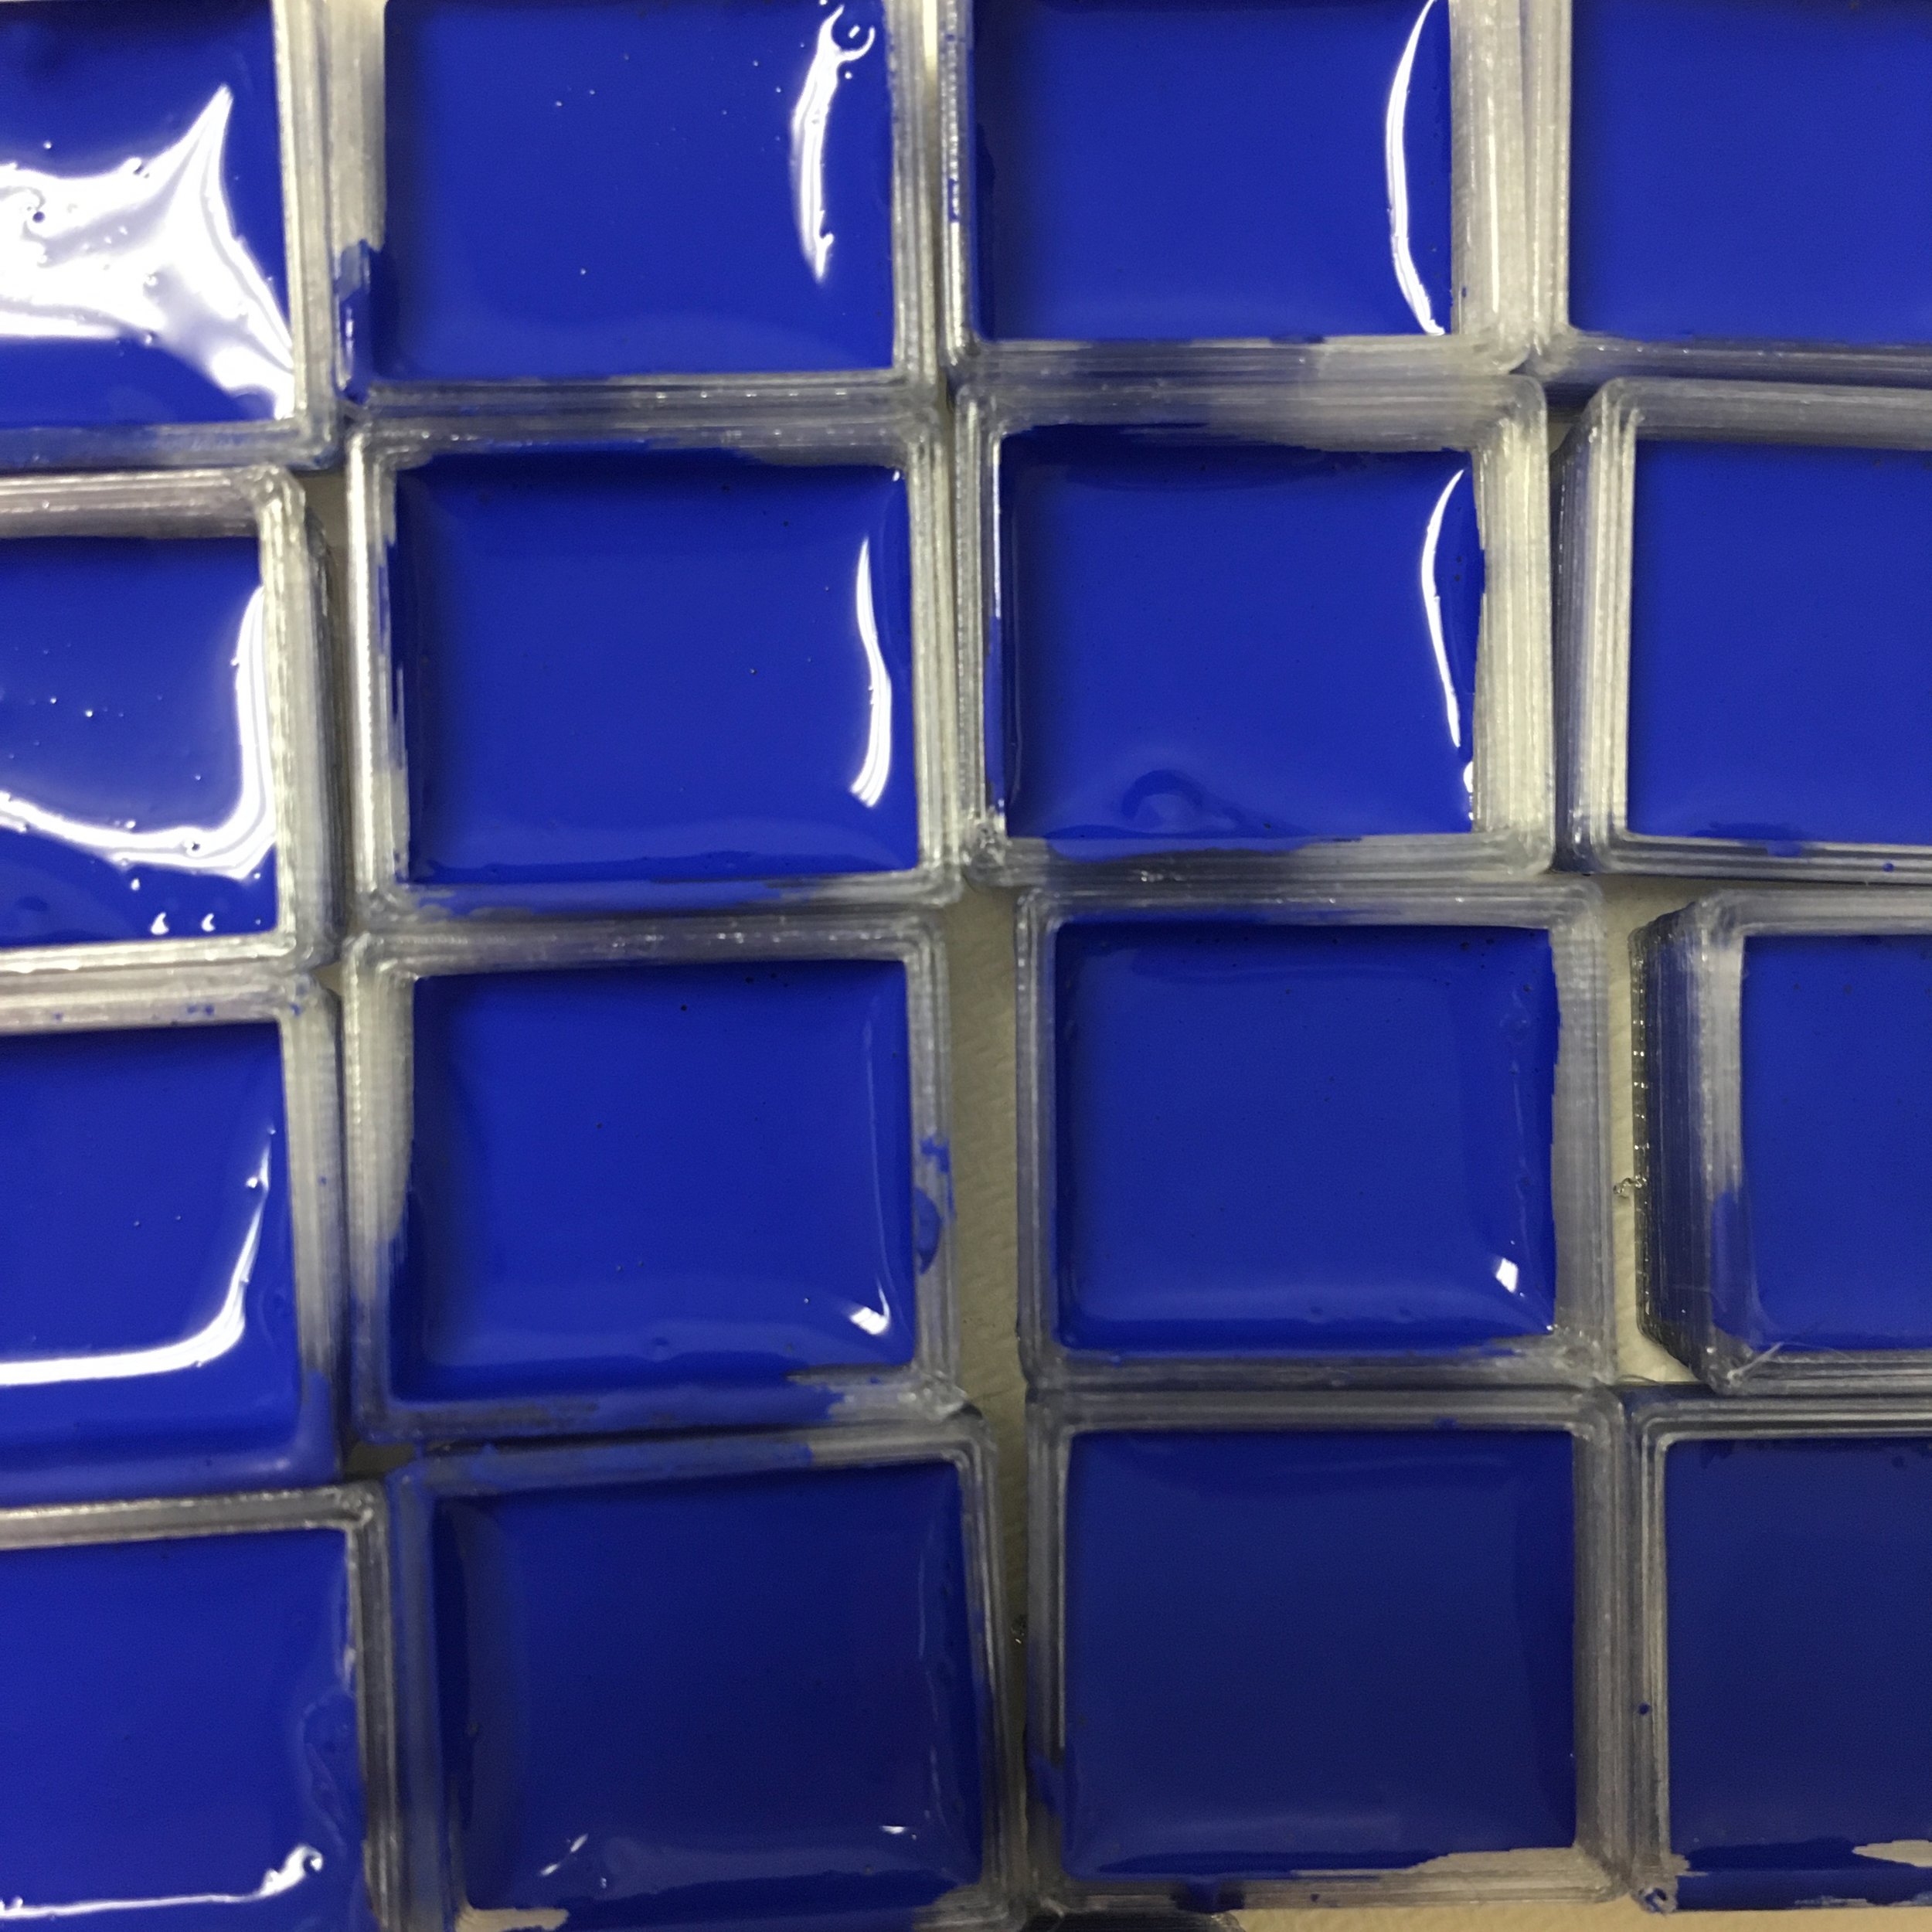 cobalt blue pans.jpg